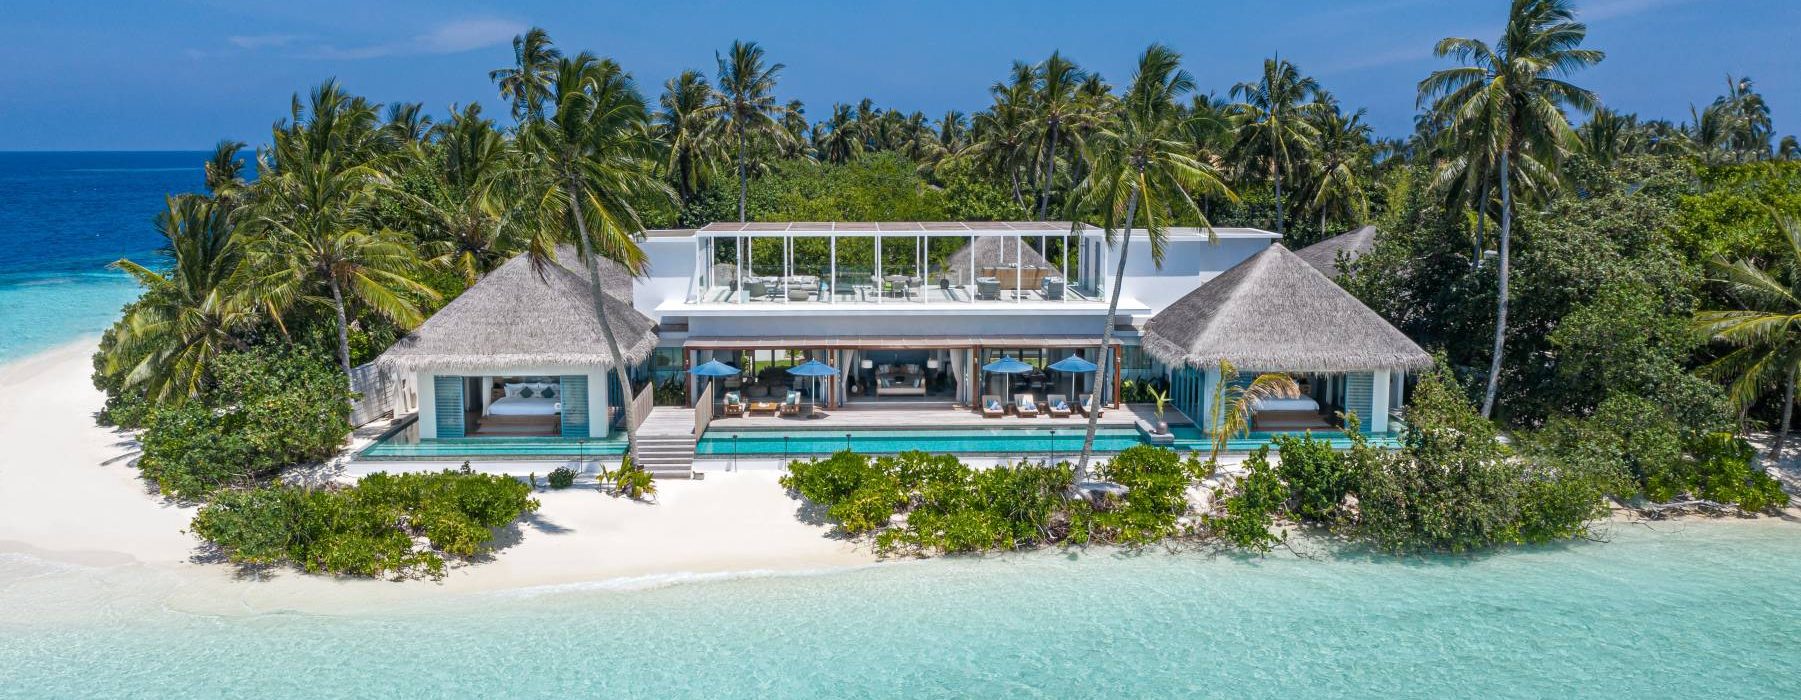 Raffles Maldives Meradhoo - مسكن رافلز الملكي – جزيرة منعزلة جديدة في المحيط الهندي